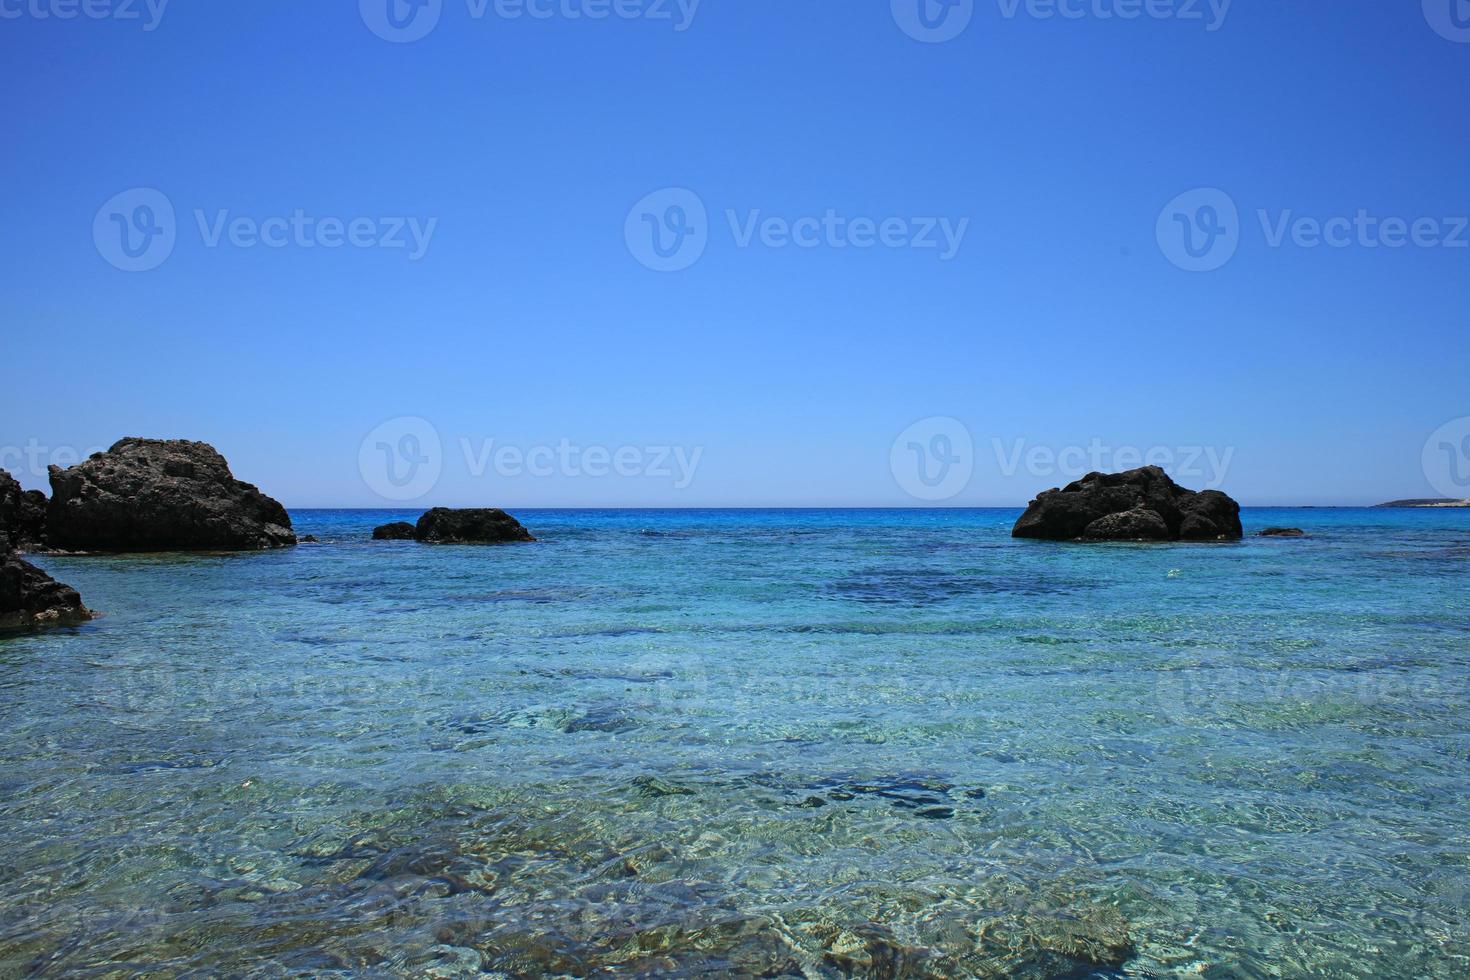 plage de kedrodasos île de crète lagon bleu camping côte eaux cristallines photo